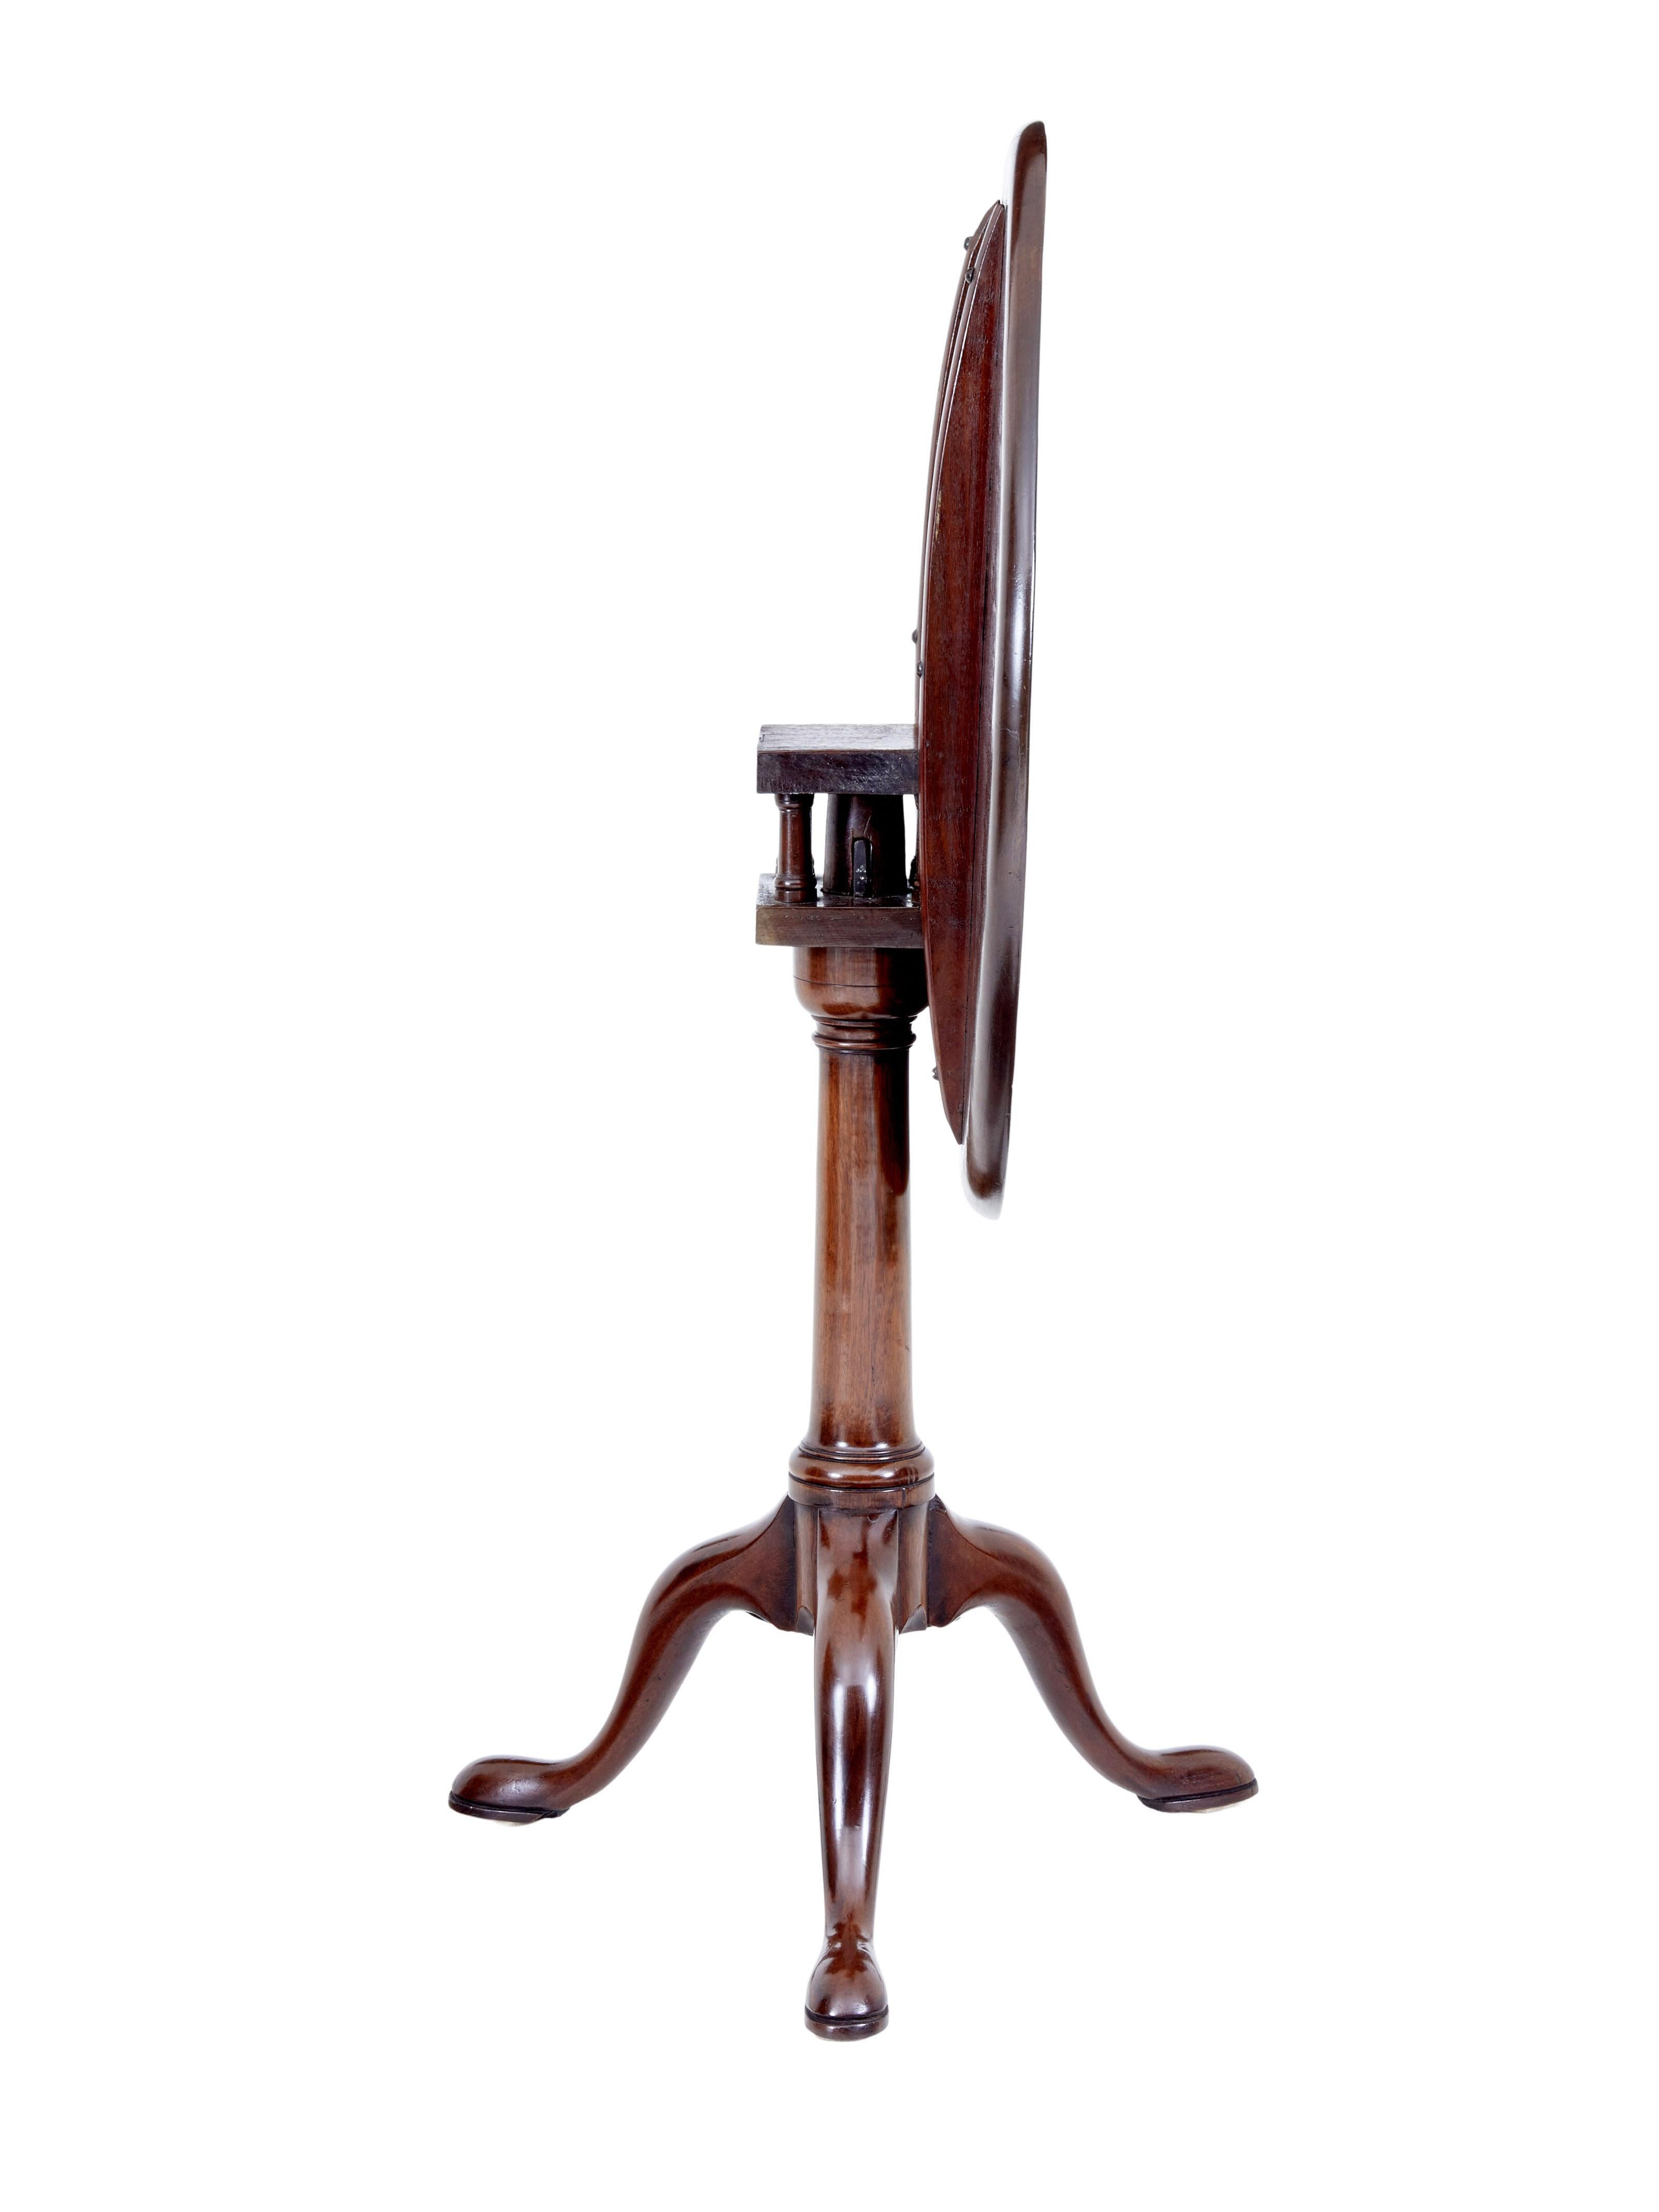 Früher georgianischer Mahagoni-Dreibeintisch des 19. Jahrhunderts, um 1800.

Gutes spätgeorgianisches Mahagoni mit runder Platte. Gestützt von Vogelkäfigspindeln und einem gedrechselten Schaft, stehend auf Cabriole-Beinen und pad-Fuß. Kippbar zur